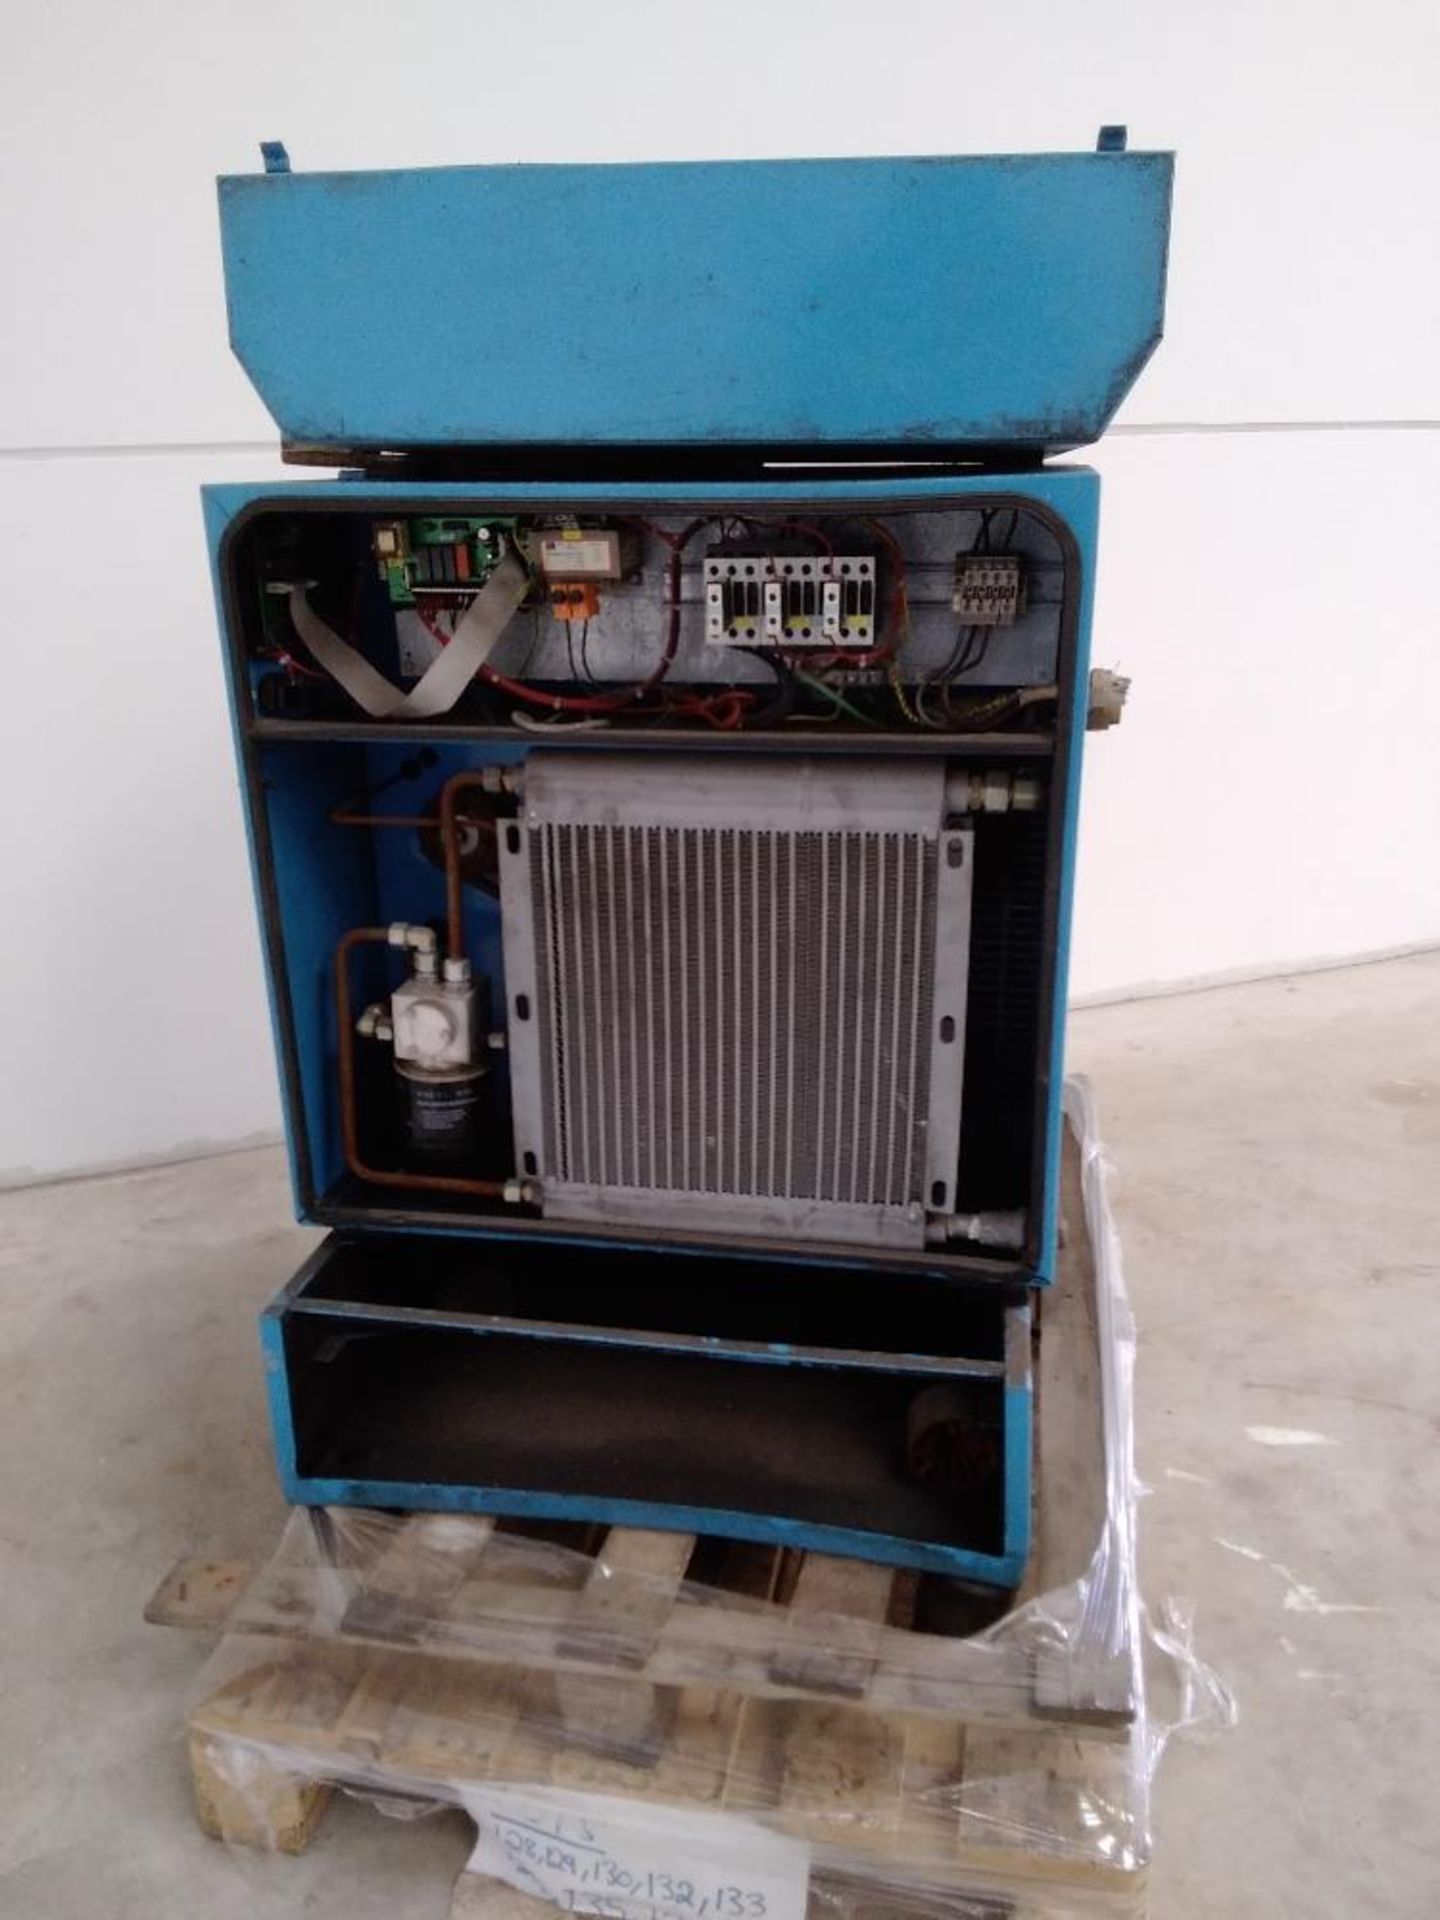 Boge S15 S/S Screw Compressor complete with Dryer - Image 3 of 4